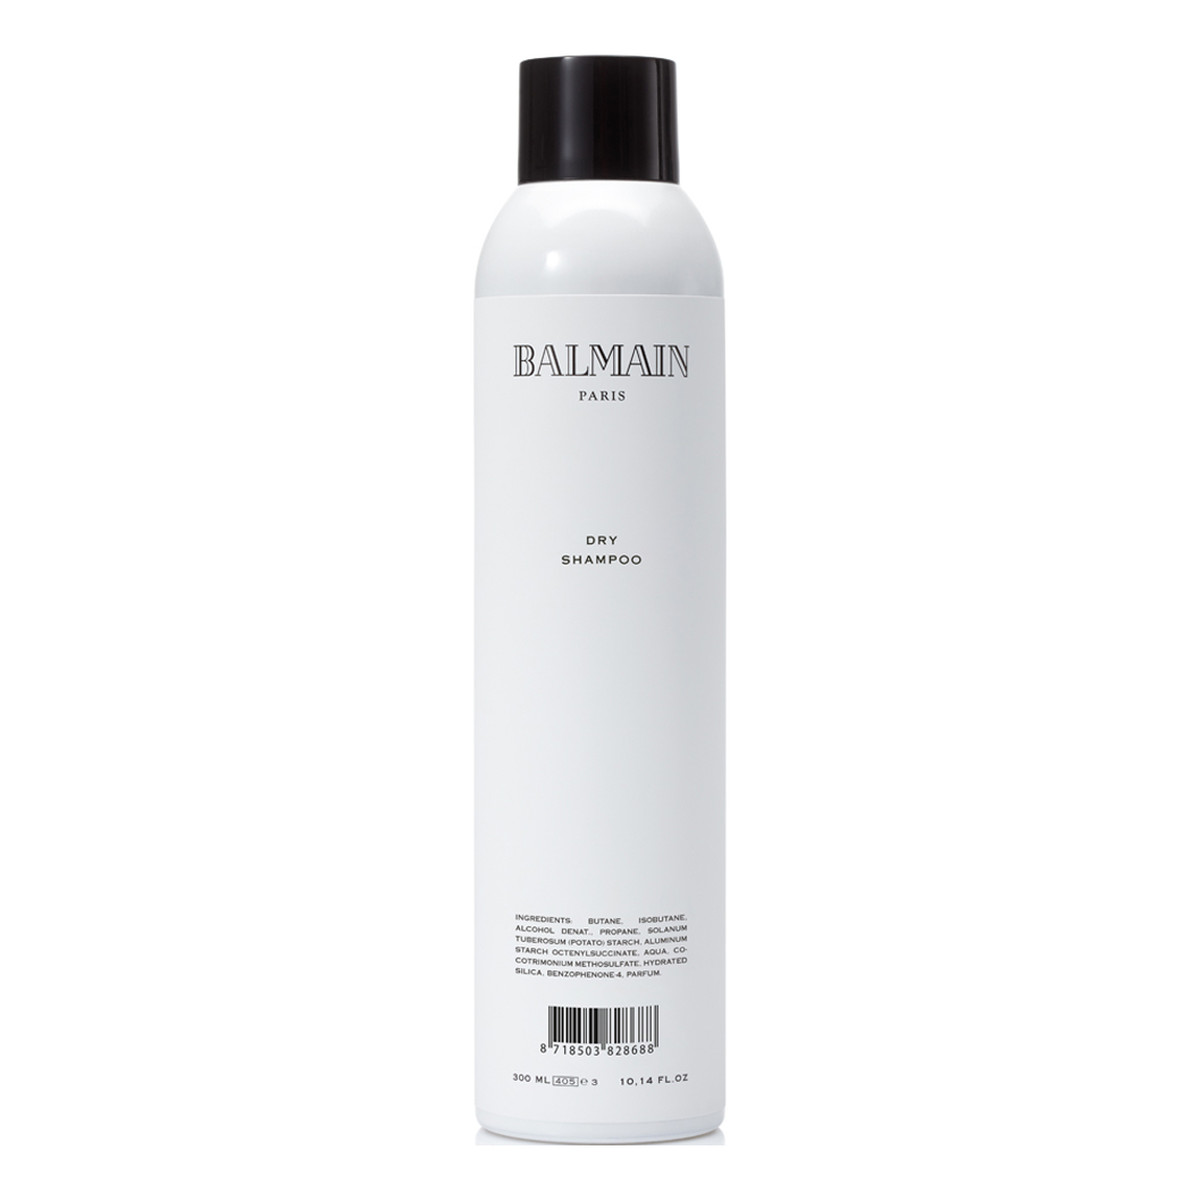 Balmain odświeżający suchy szampon do włosów 300ml